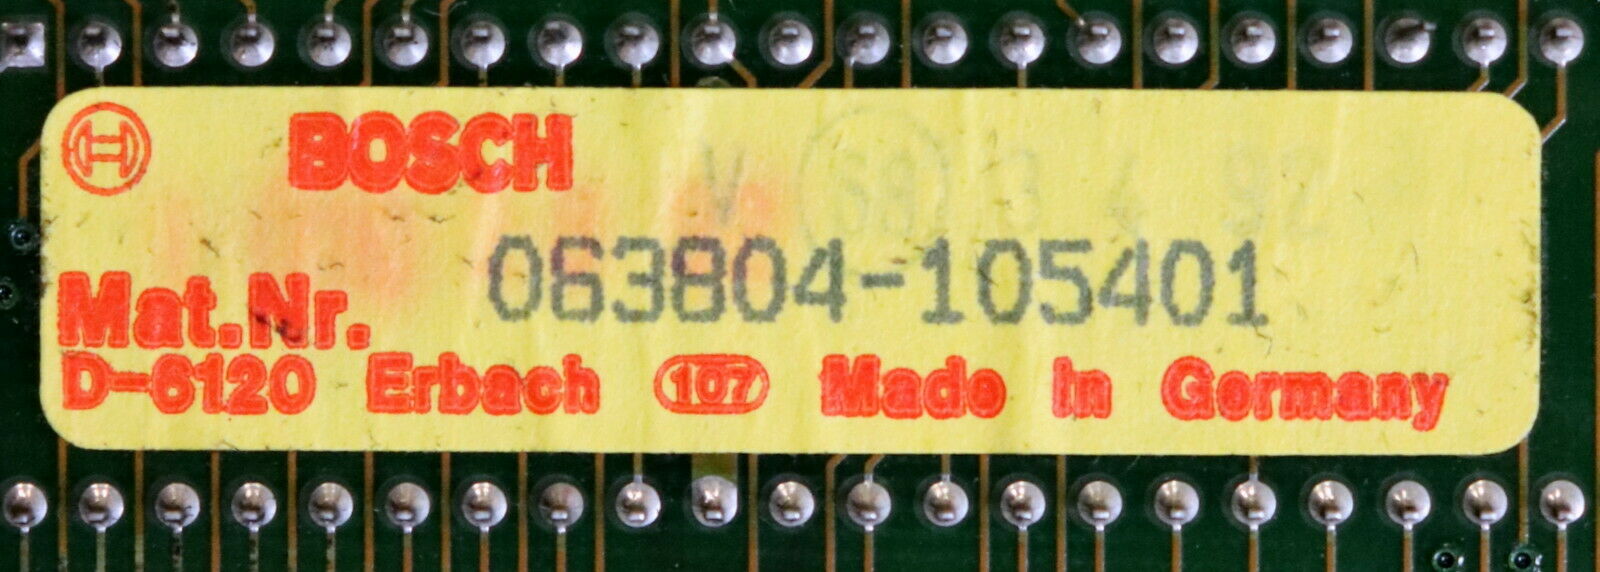 BOSCH Zentraleinheit ZE611 Mat.Nr. 063804-105401